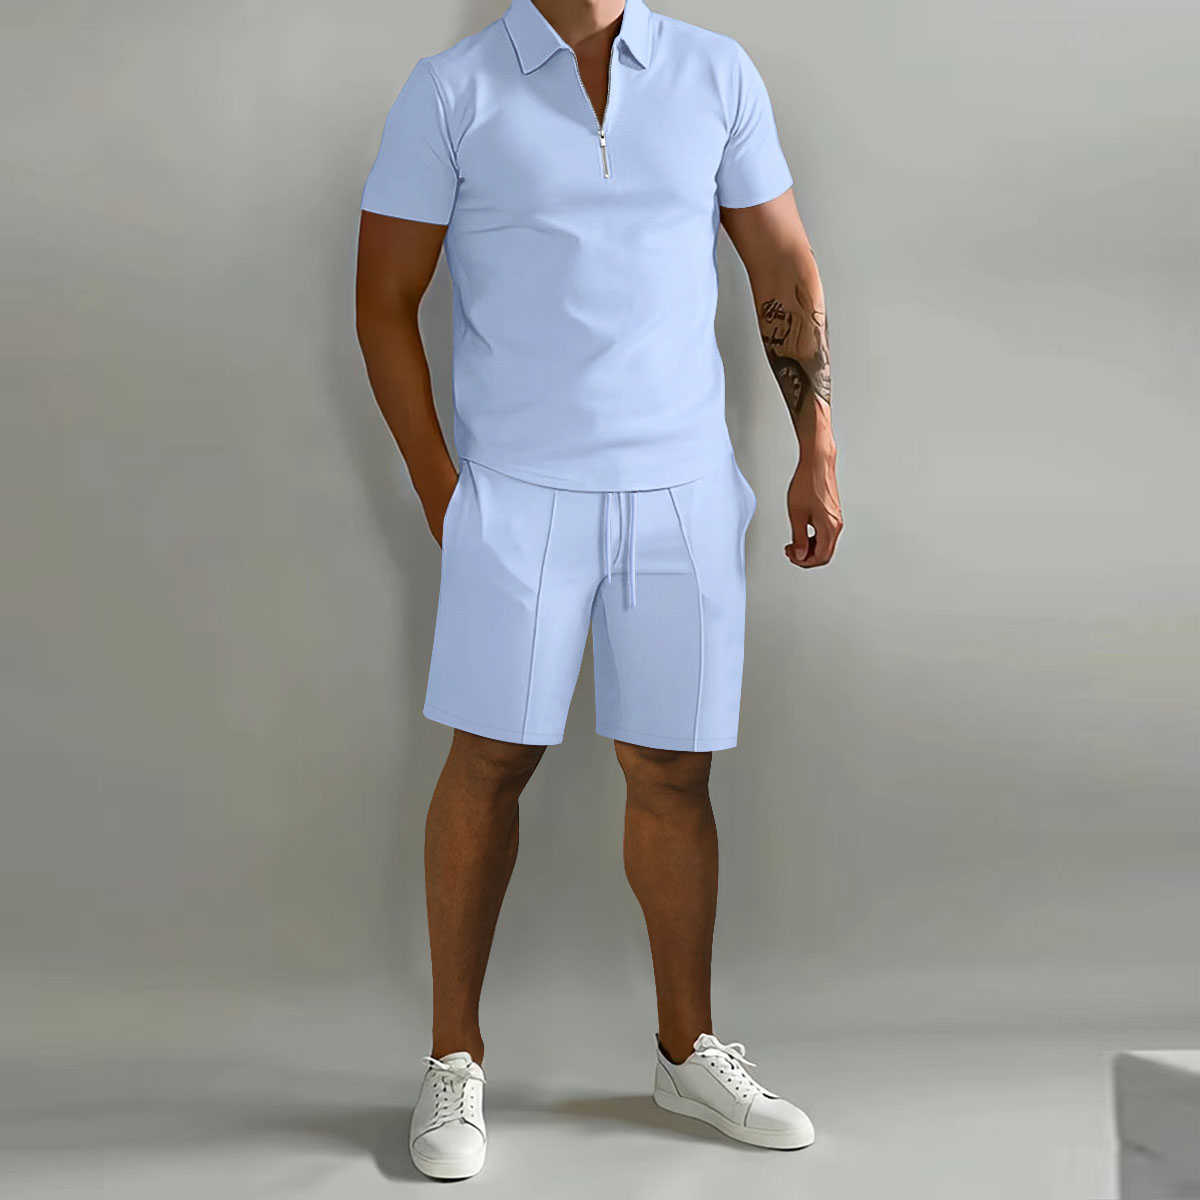 Agasalhos de verão camisa pólo de cavalo fina de manga curta + camisa esportiva 2 novas roupas de atletismo masculinas conjunto sólido casual jogging roupas esportivas P230605